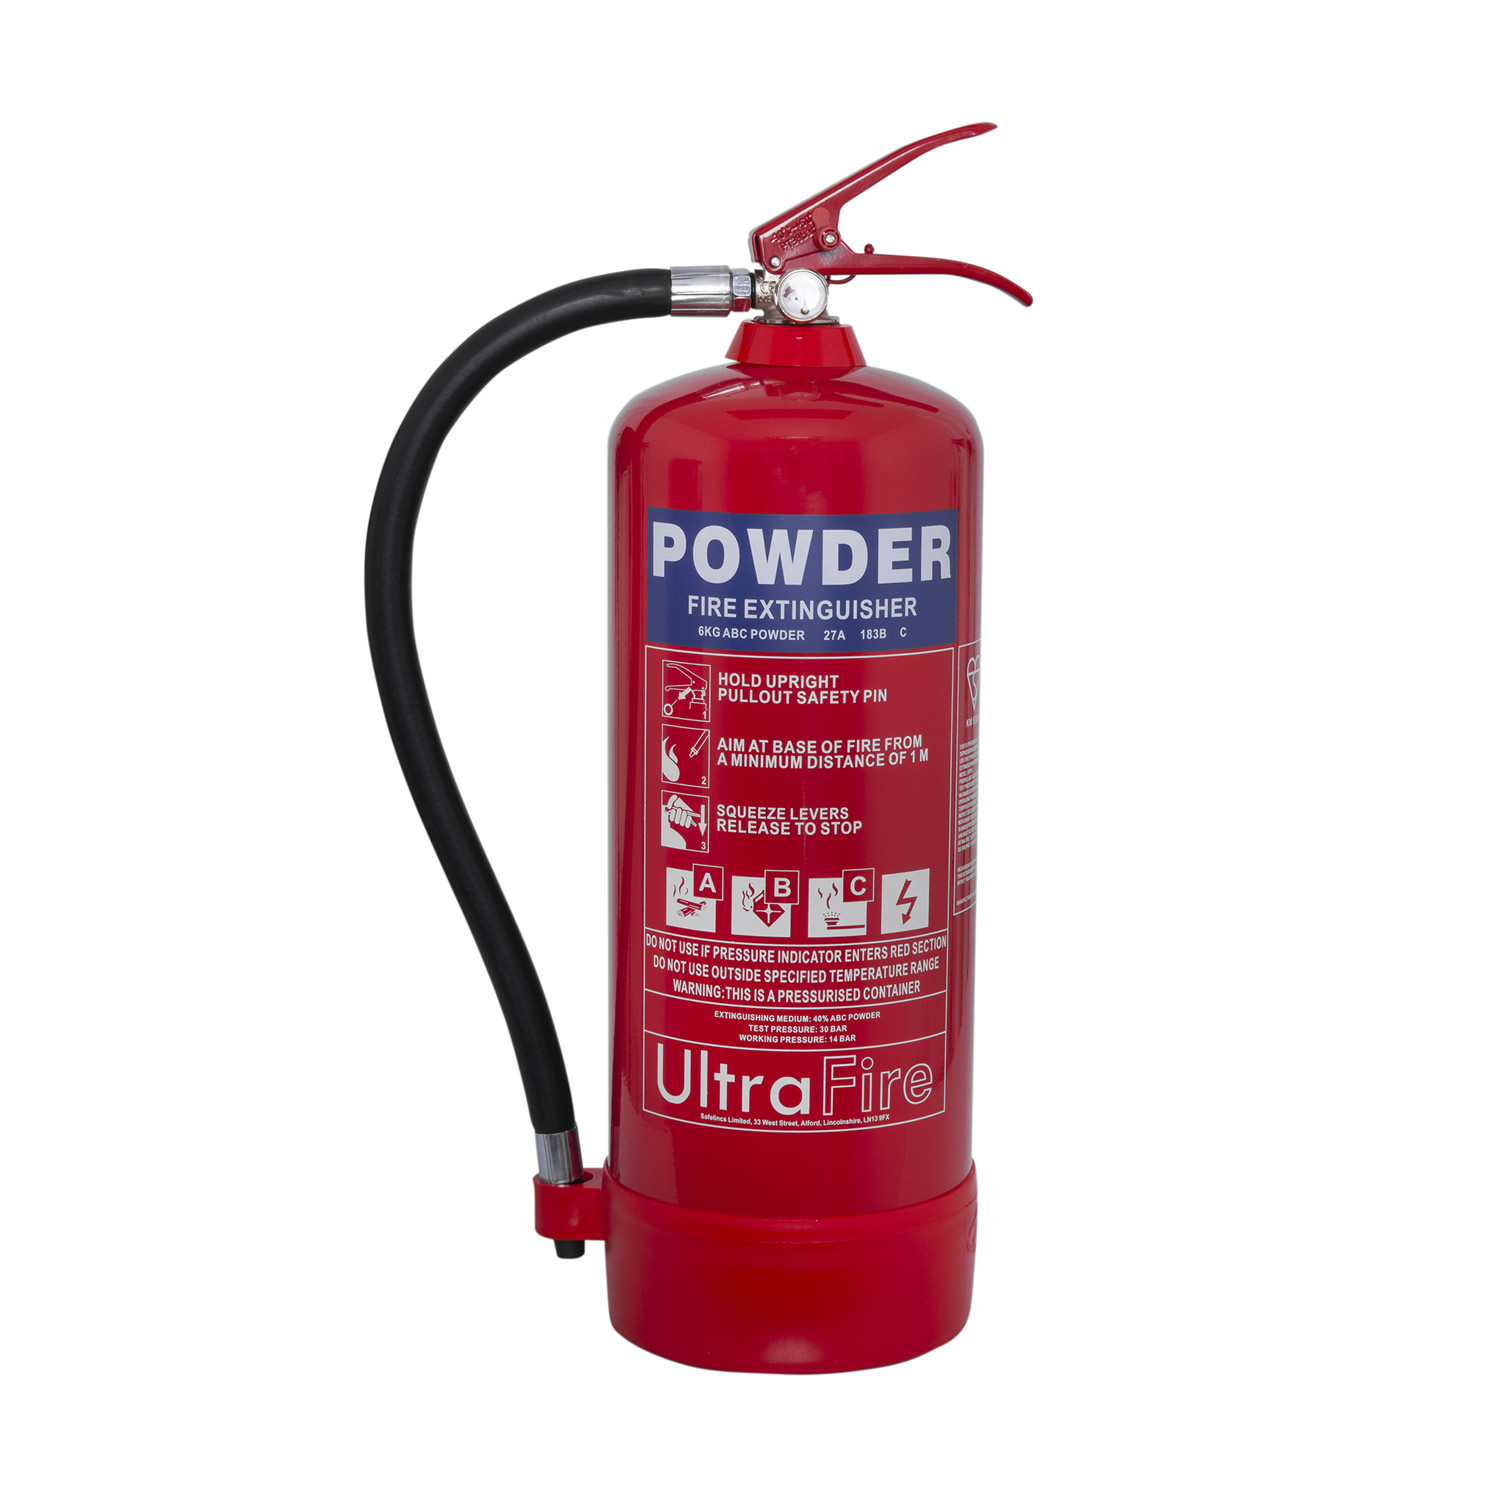 6kg Powder <br>Fire Extinguisher